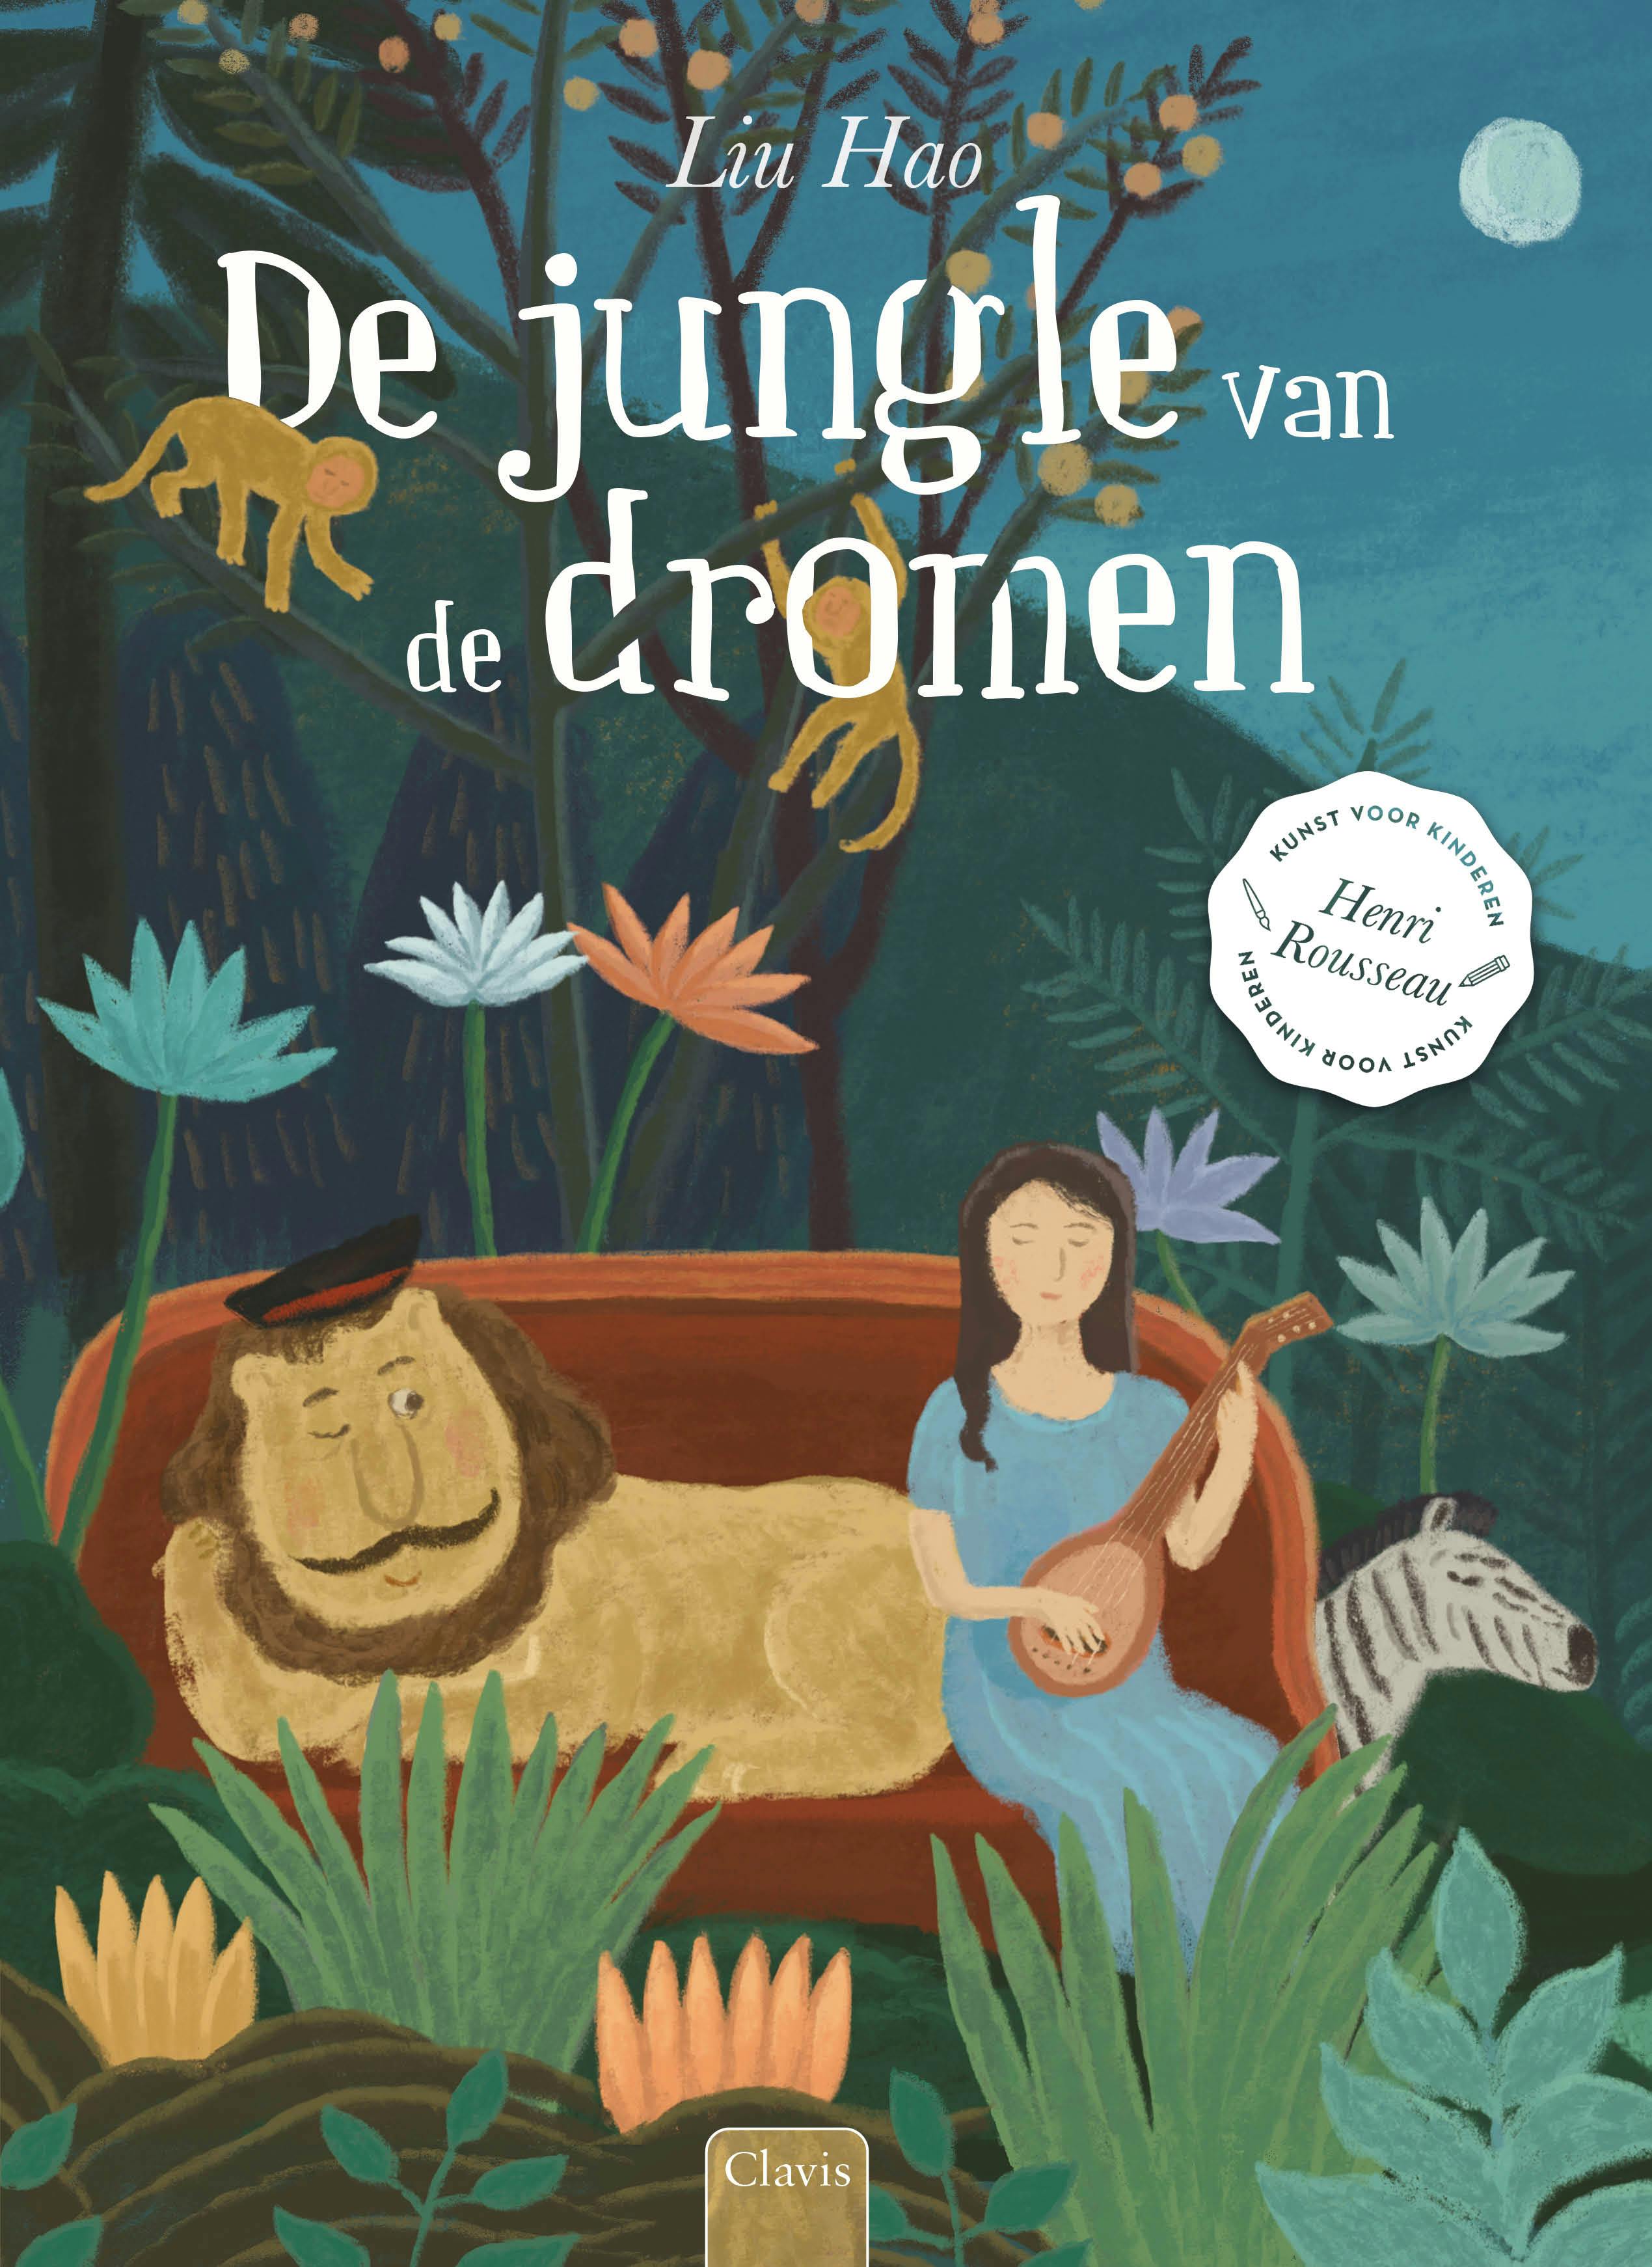 Cover De jungle van de dromen van Liu Hao
ISBN 9789044842470